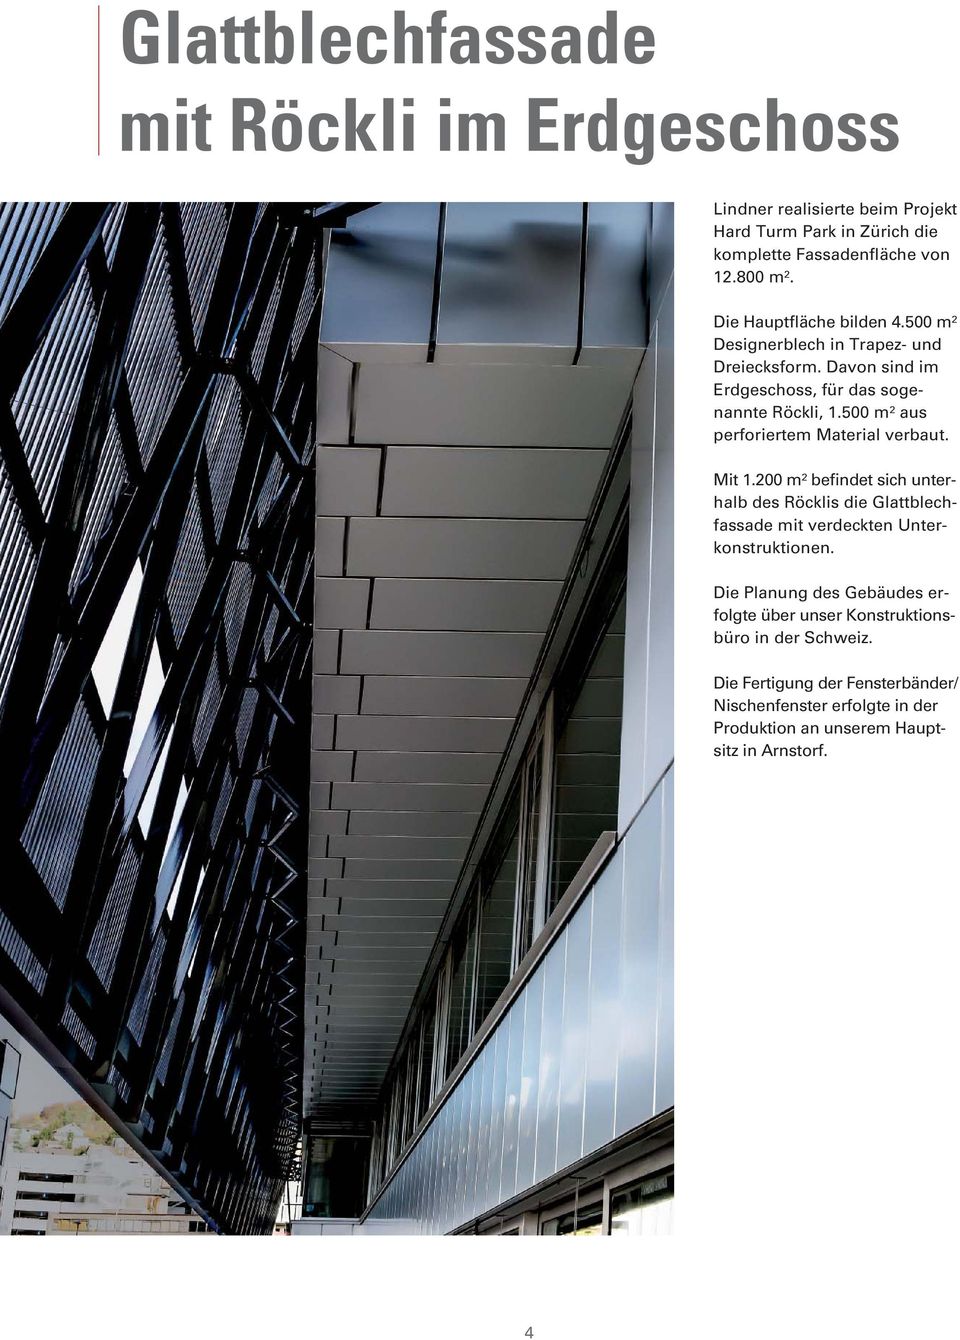 500 m² aus perforiertem Material verbaut. Mit 1.200 m² befindet sich unterhalb des Röcklis die Glattblechfassade mit verdeckten Unterkonstruktionen.